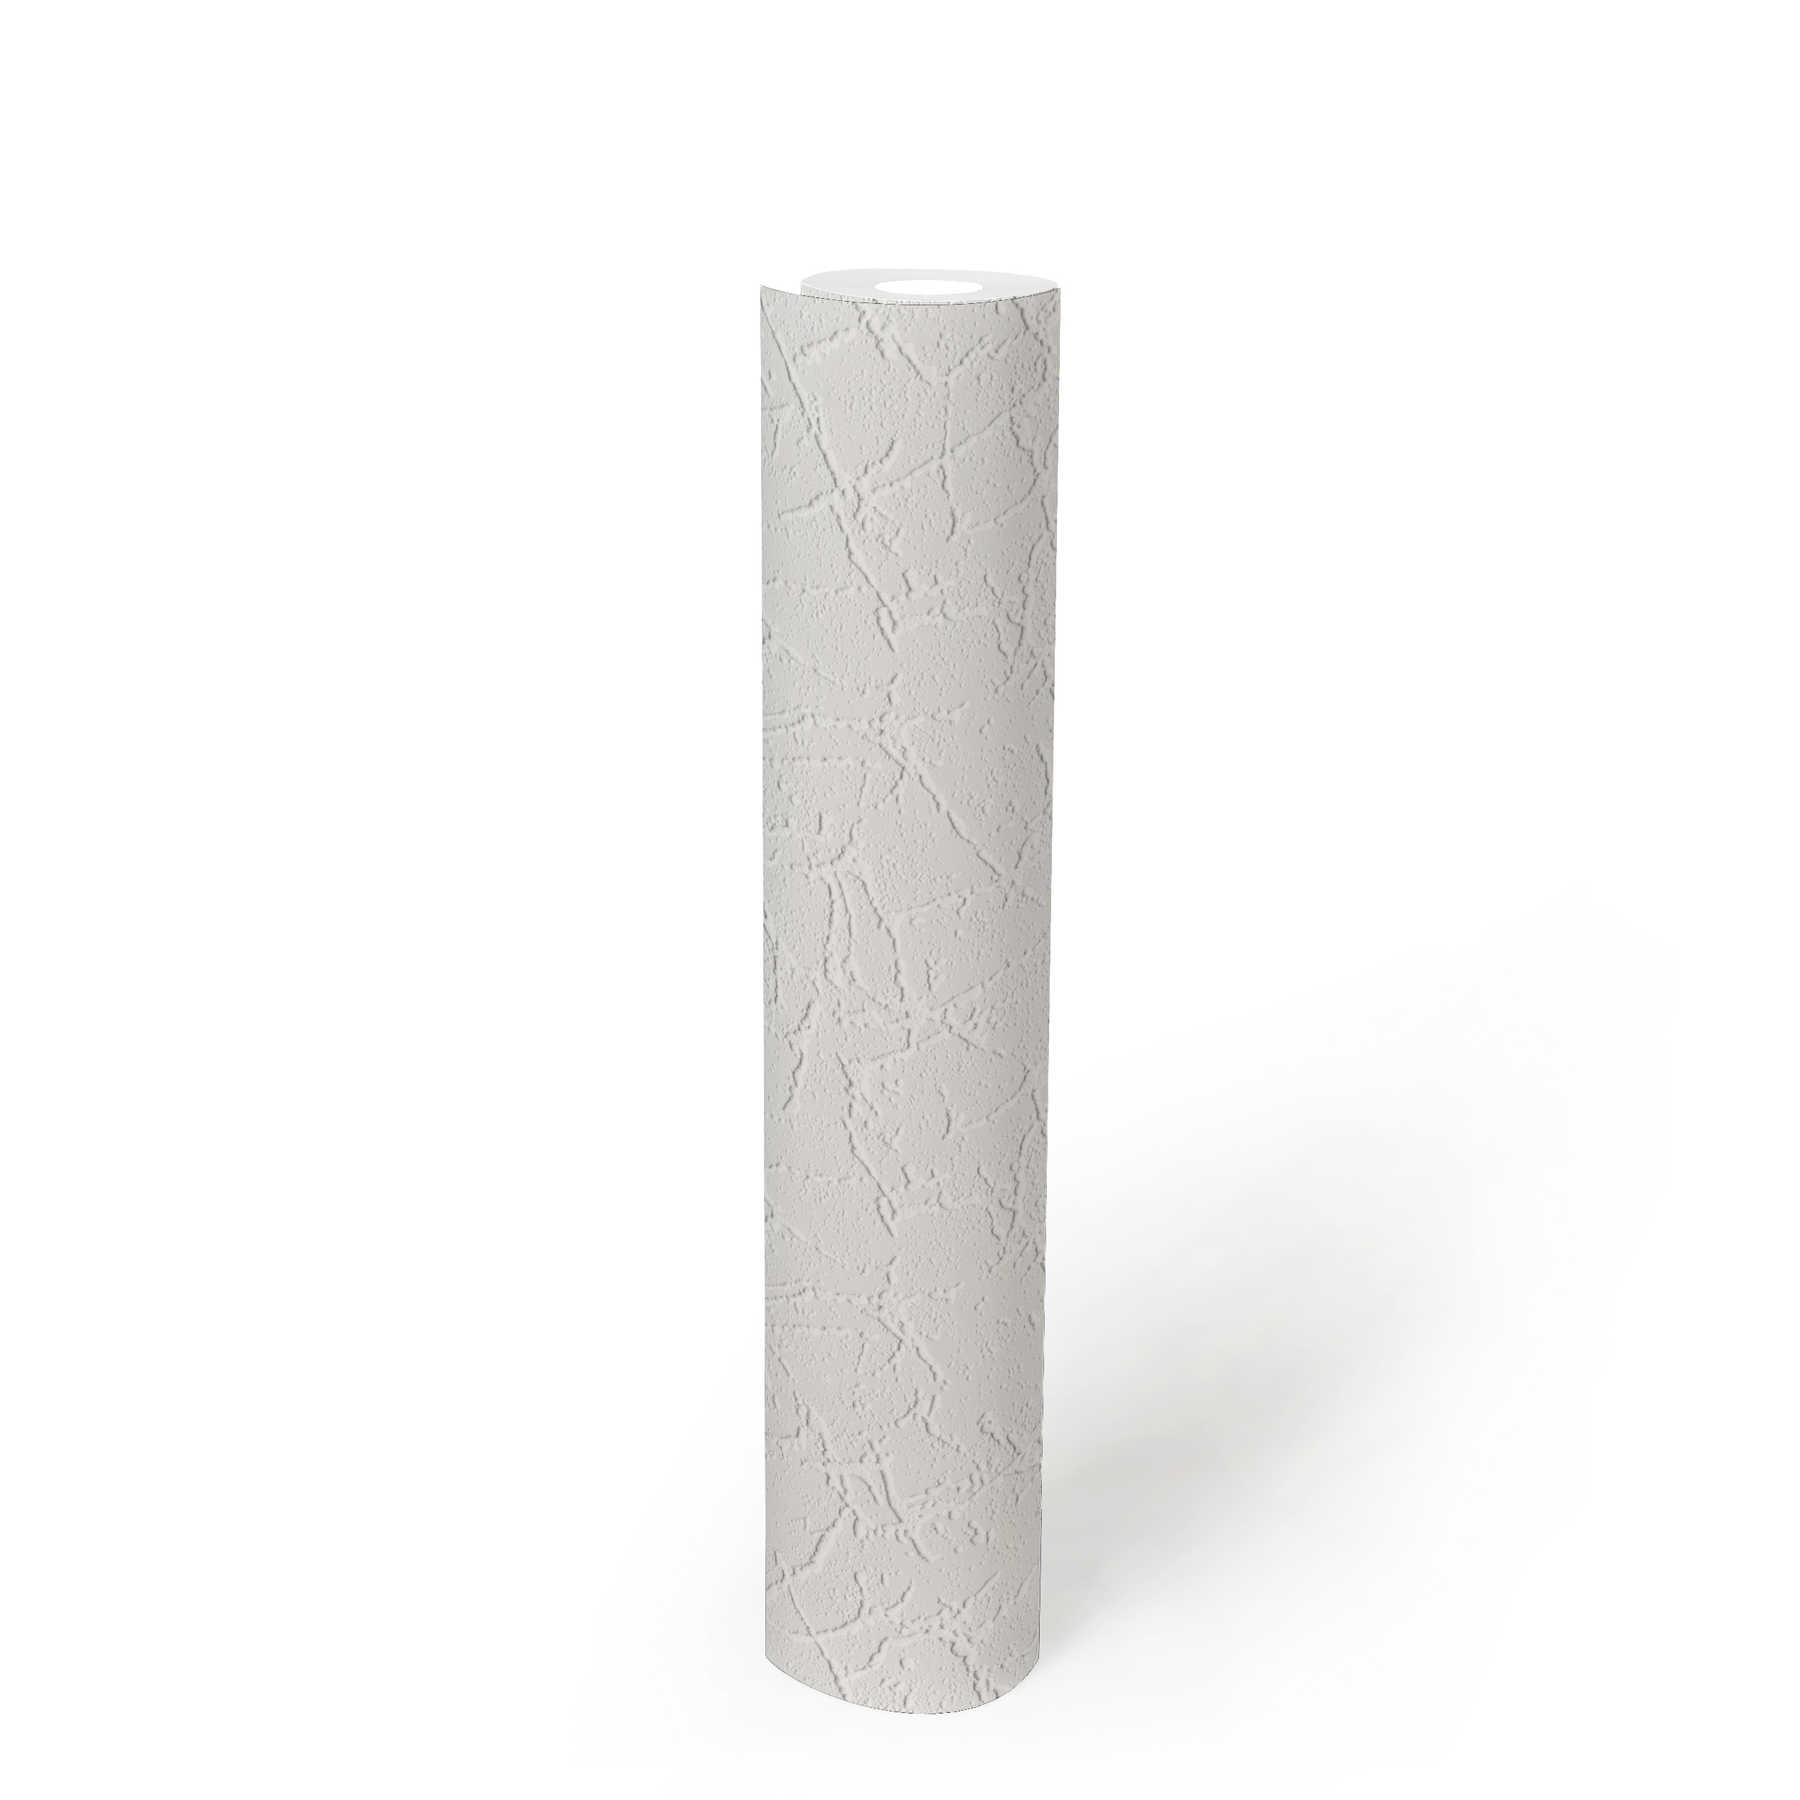             spatola per carta da parati in cartongesso modello struttura in gesso - bianco
        